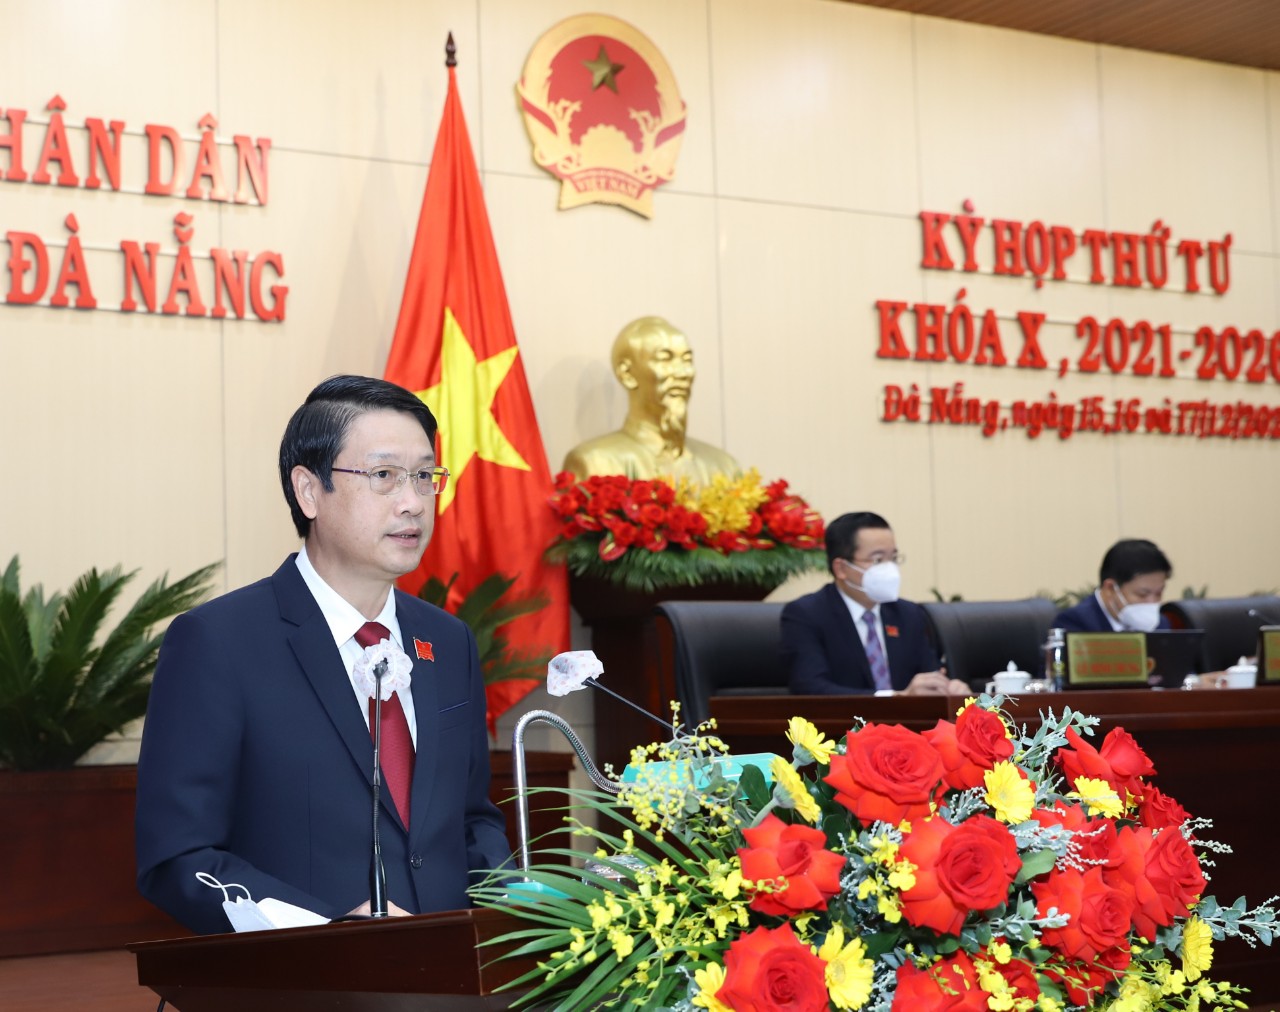 Chủ tịch Ủy ban MTTQ Việt Nam thành phố Ngô Xuân Thắng báo cáo tại kỳ họp. Ảnh: T.HUY - L.PHƯƠNG